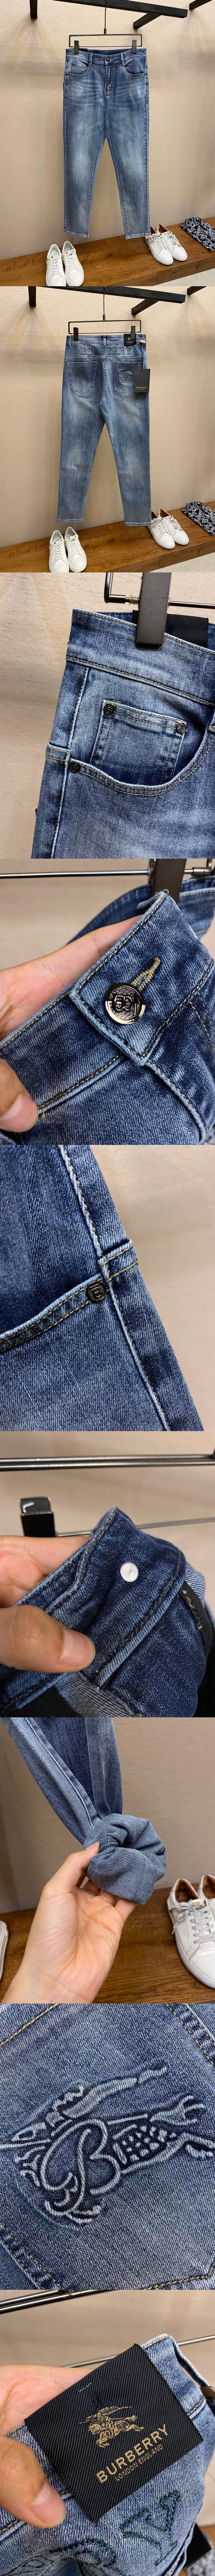 BURBERRY 官網最新款牛仔褲 質感享受 柔軟舒適 百搭0